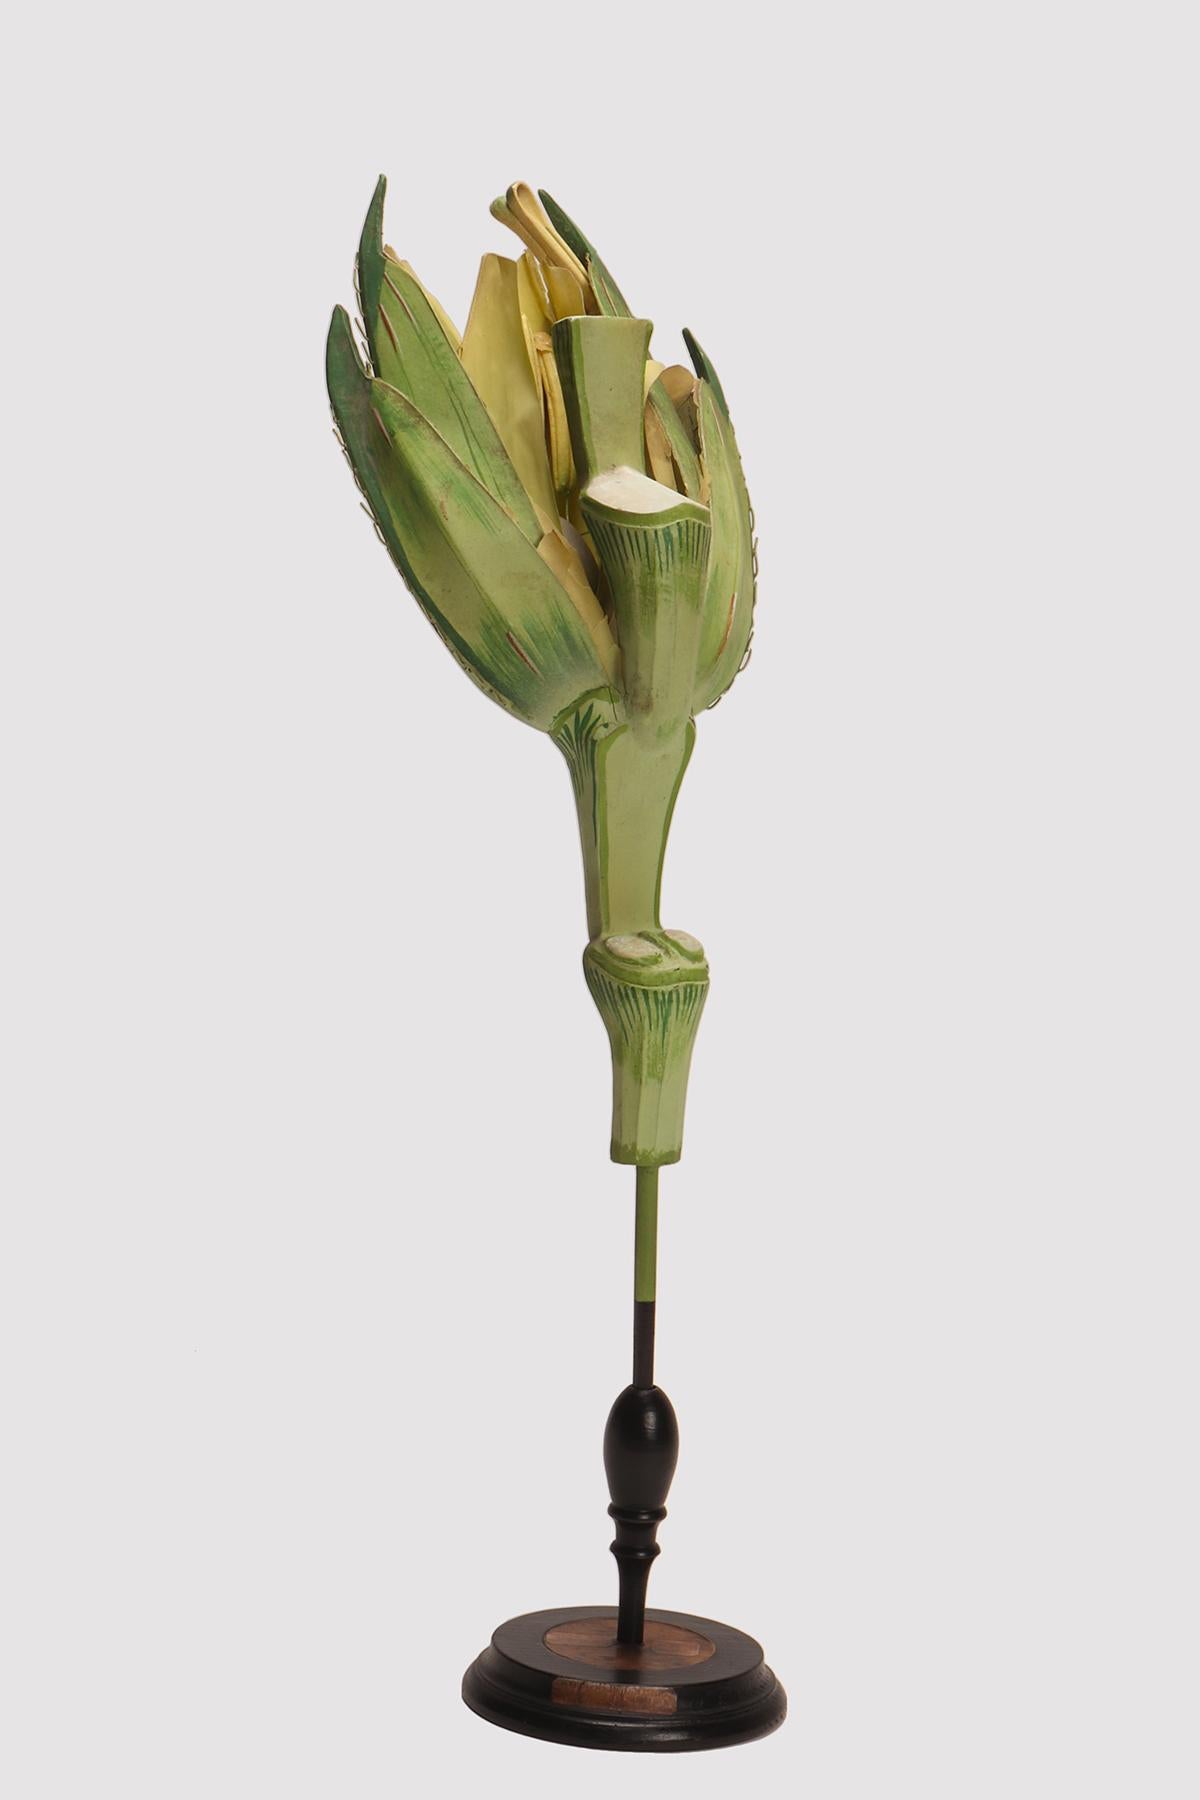 Un spécimen botanique didactique représentant une fleur de blé (Triticum durum), réalisé en papier mâché et en métal avec une base en bois noir, peint à la main. Extrêmement détaillé. Osterloh Modell n.19. Allemagne vers 1900.